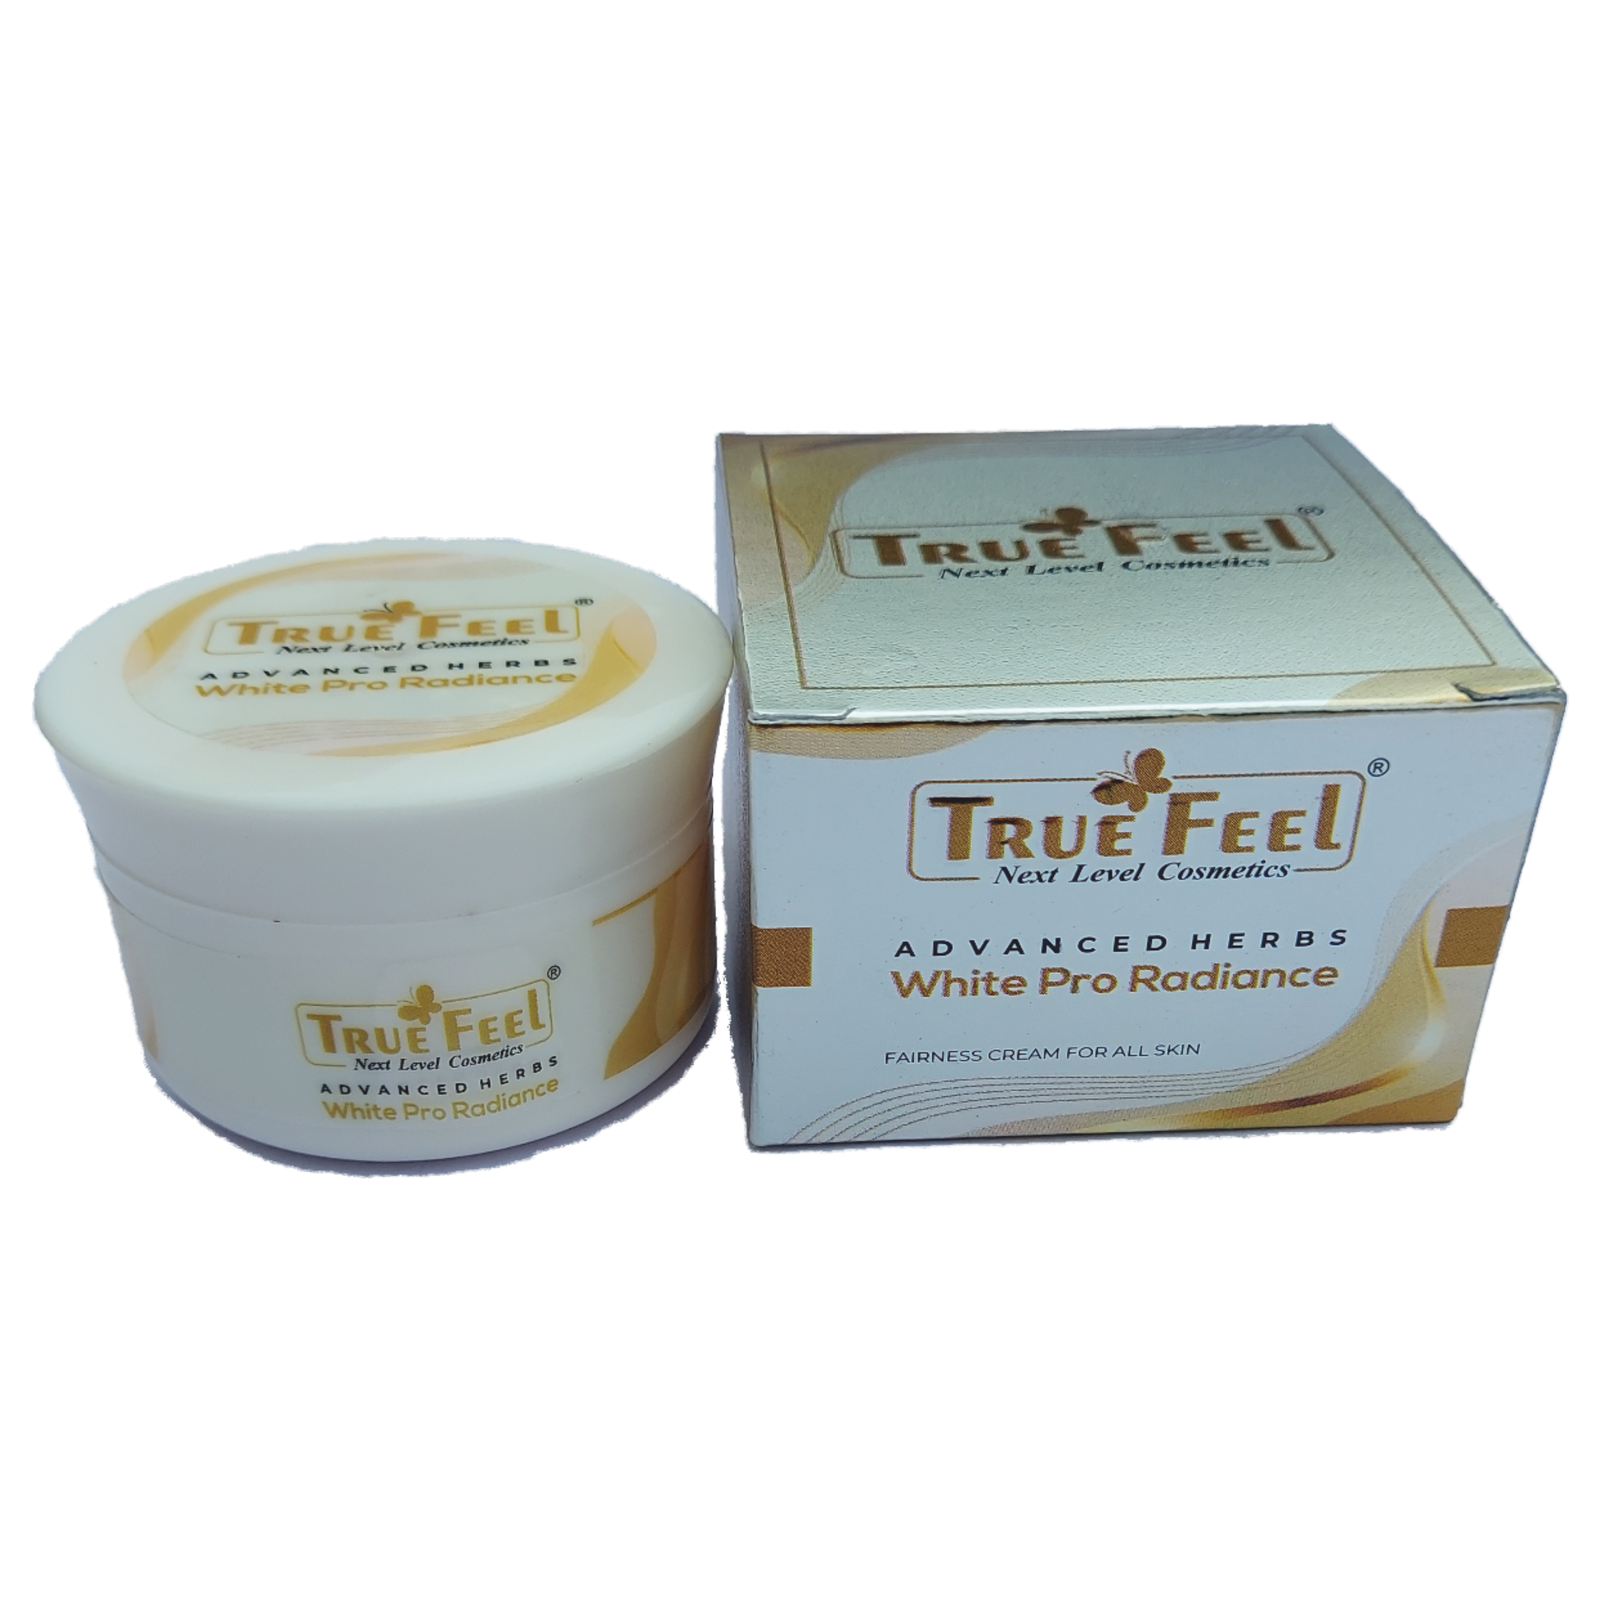 True Feel White Pro Radiance Ayurvedic Whitening Brightening Glow Fairness Cream
